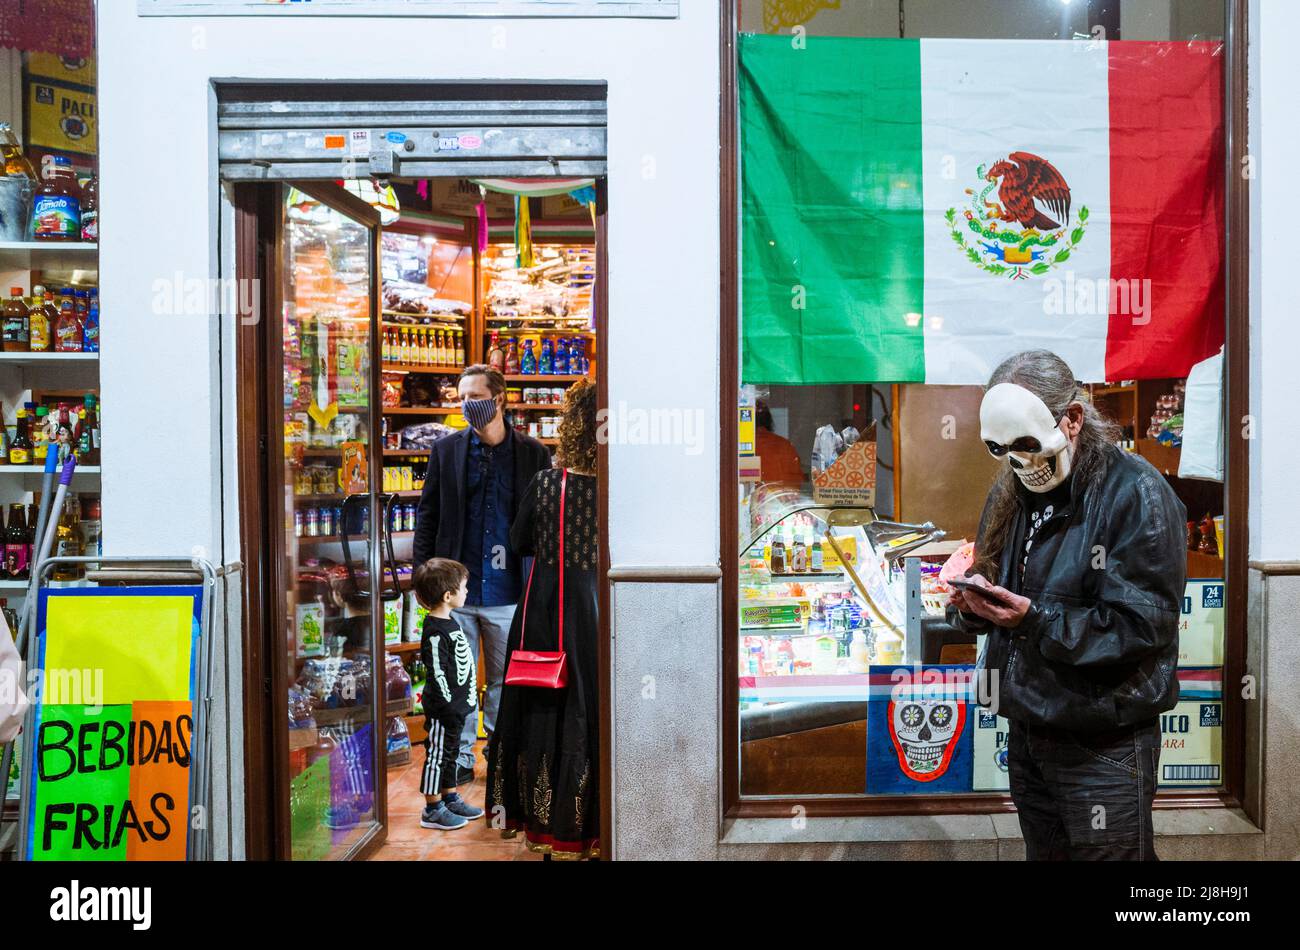 Granada, Andalucía, España : El día de los muertos, un hombre mexicano que lleva una máscara de cráneo se encuentra fuera de un supermercado mexicano. Foto de stock